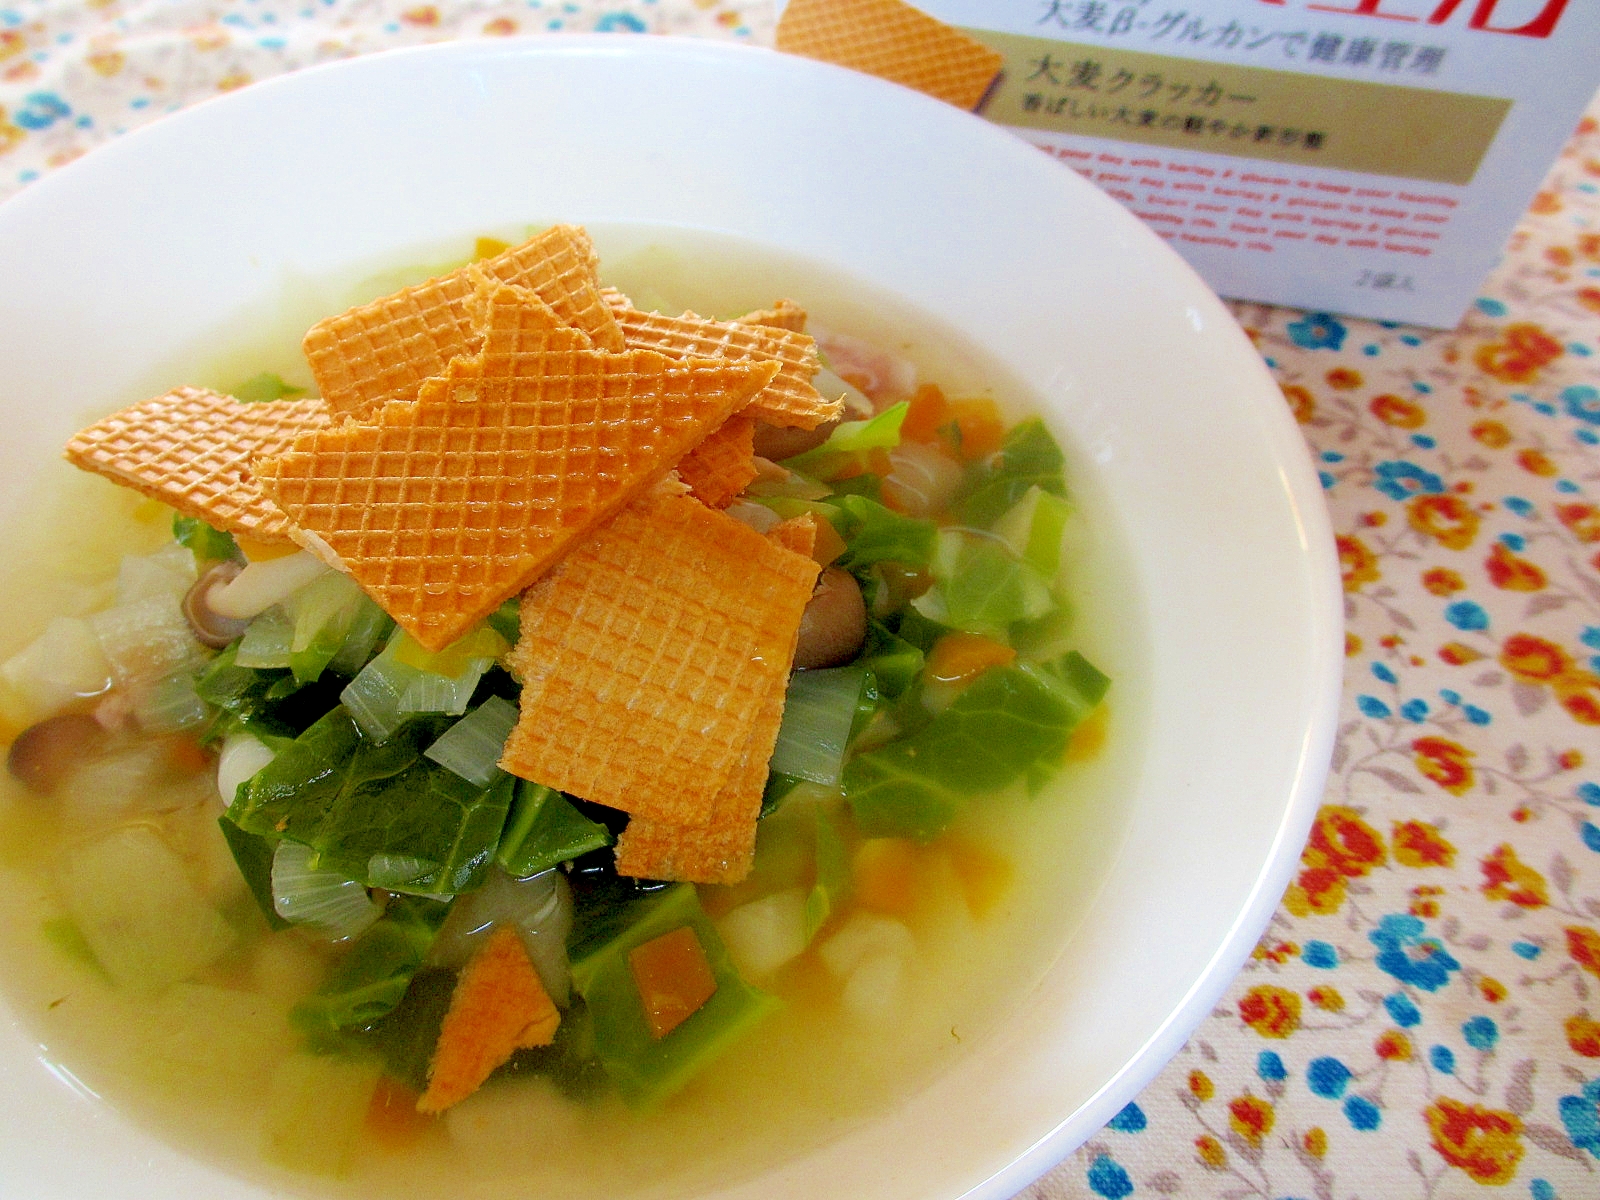 大麦生活クラッカー野菜スープ